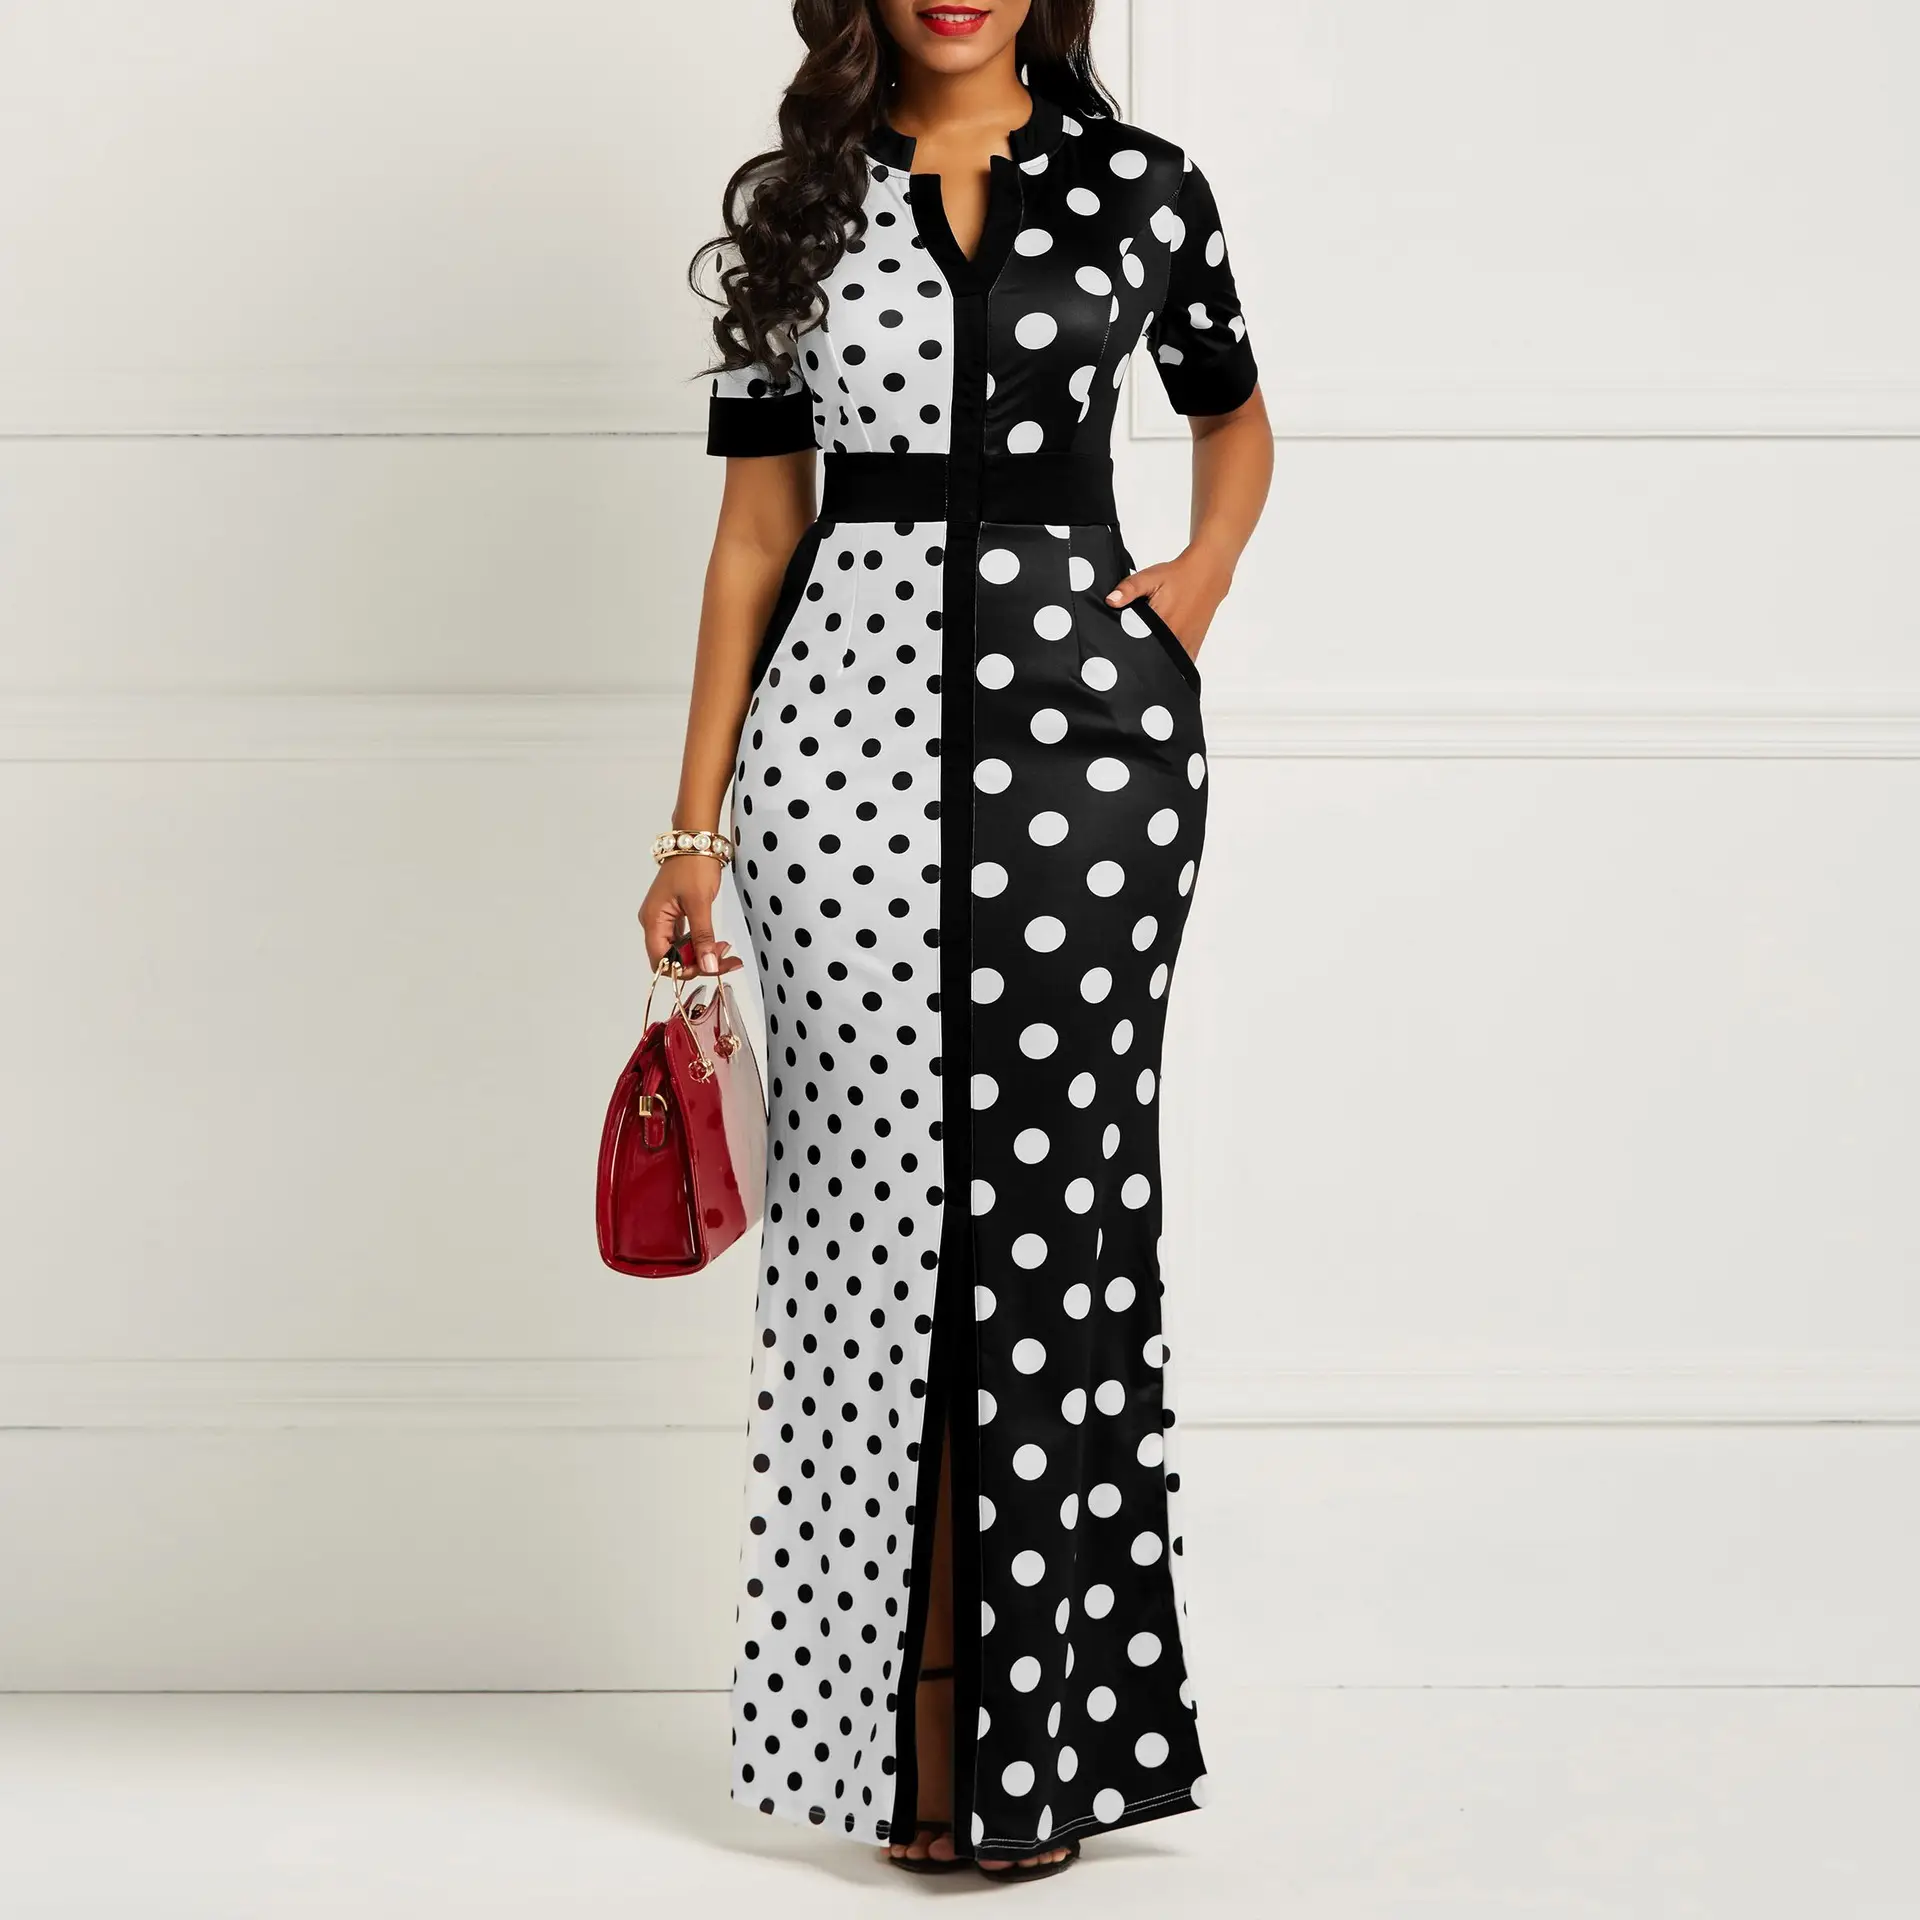 Châu Âu Và Mỹ Thiết Kế Đen Trắng Sóng Điểm Váy Phụ Nữ Thắt Lưng Polka Dot Dài Maxi Dress